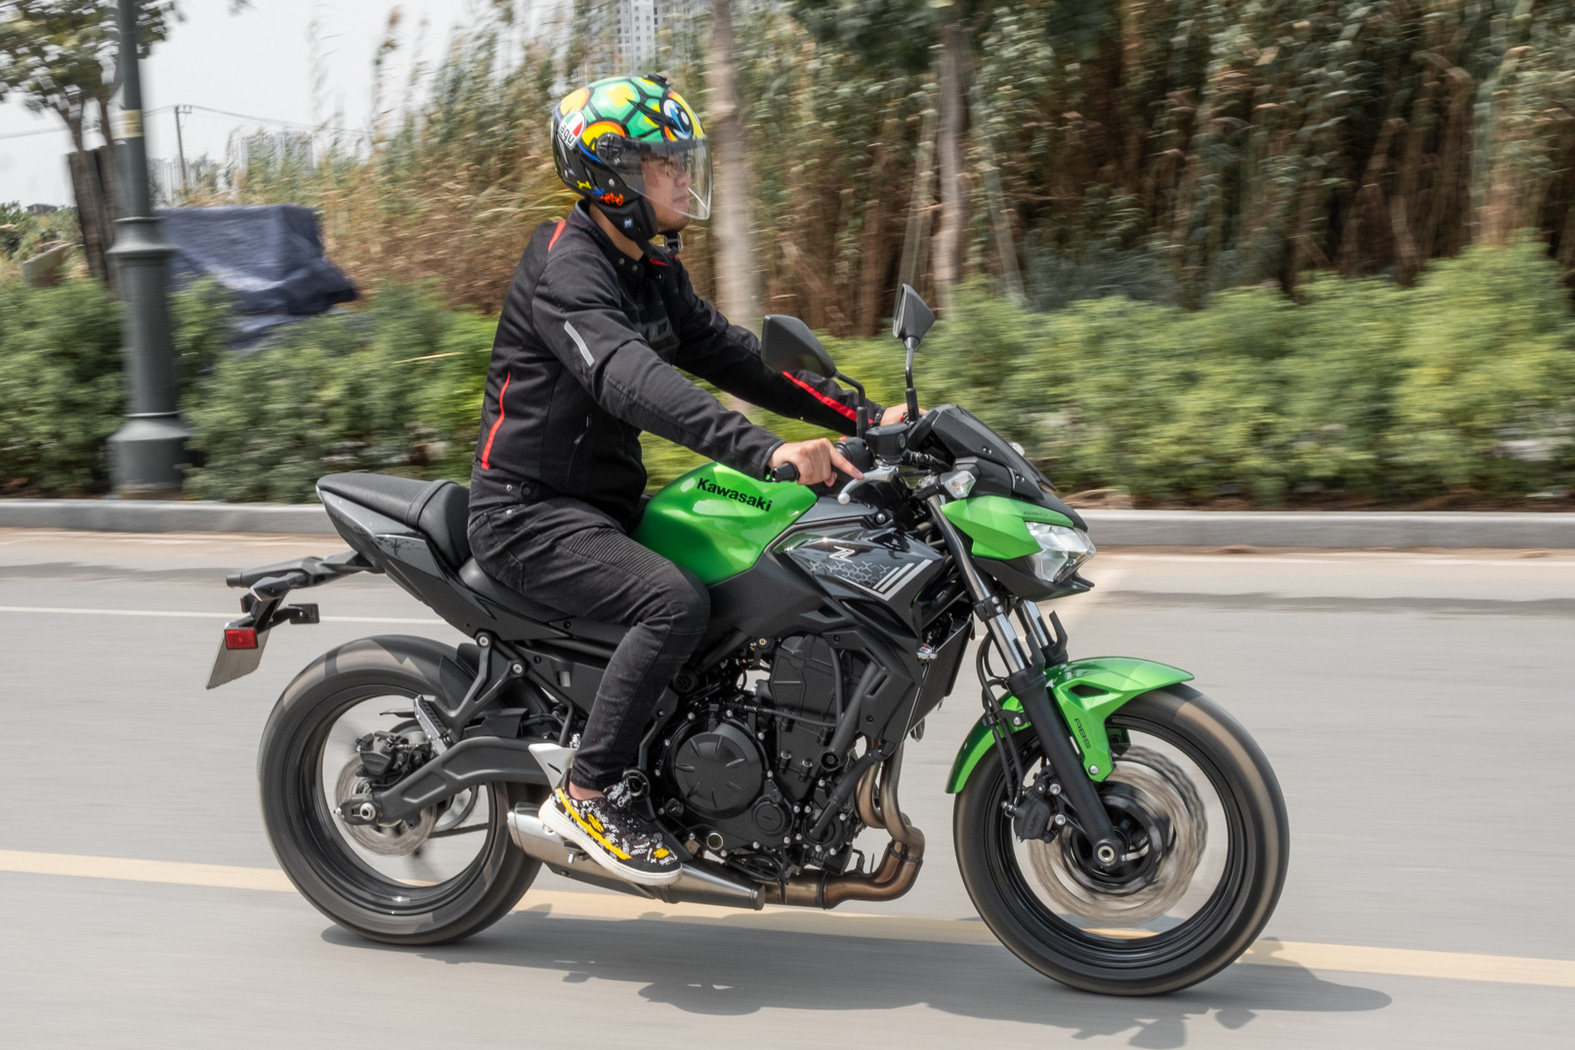 Đánh giá Kawasaki Z650: Naked bike cỡ trung đạt tiêu chí 'Ngon, bổ, nhưng tạm rẻ'